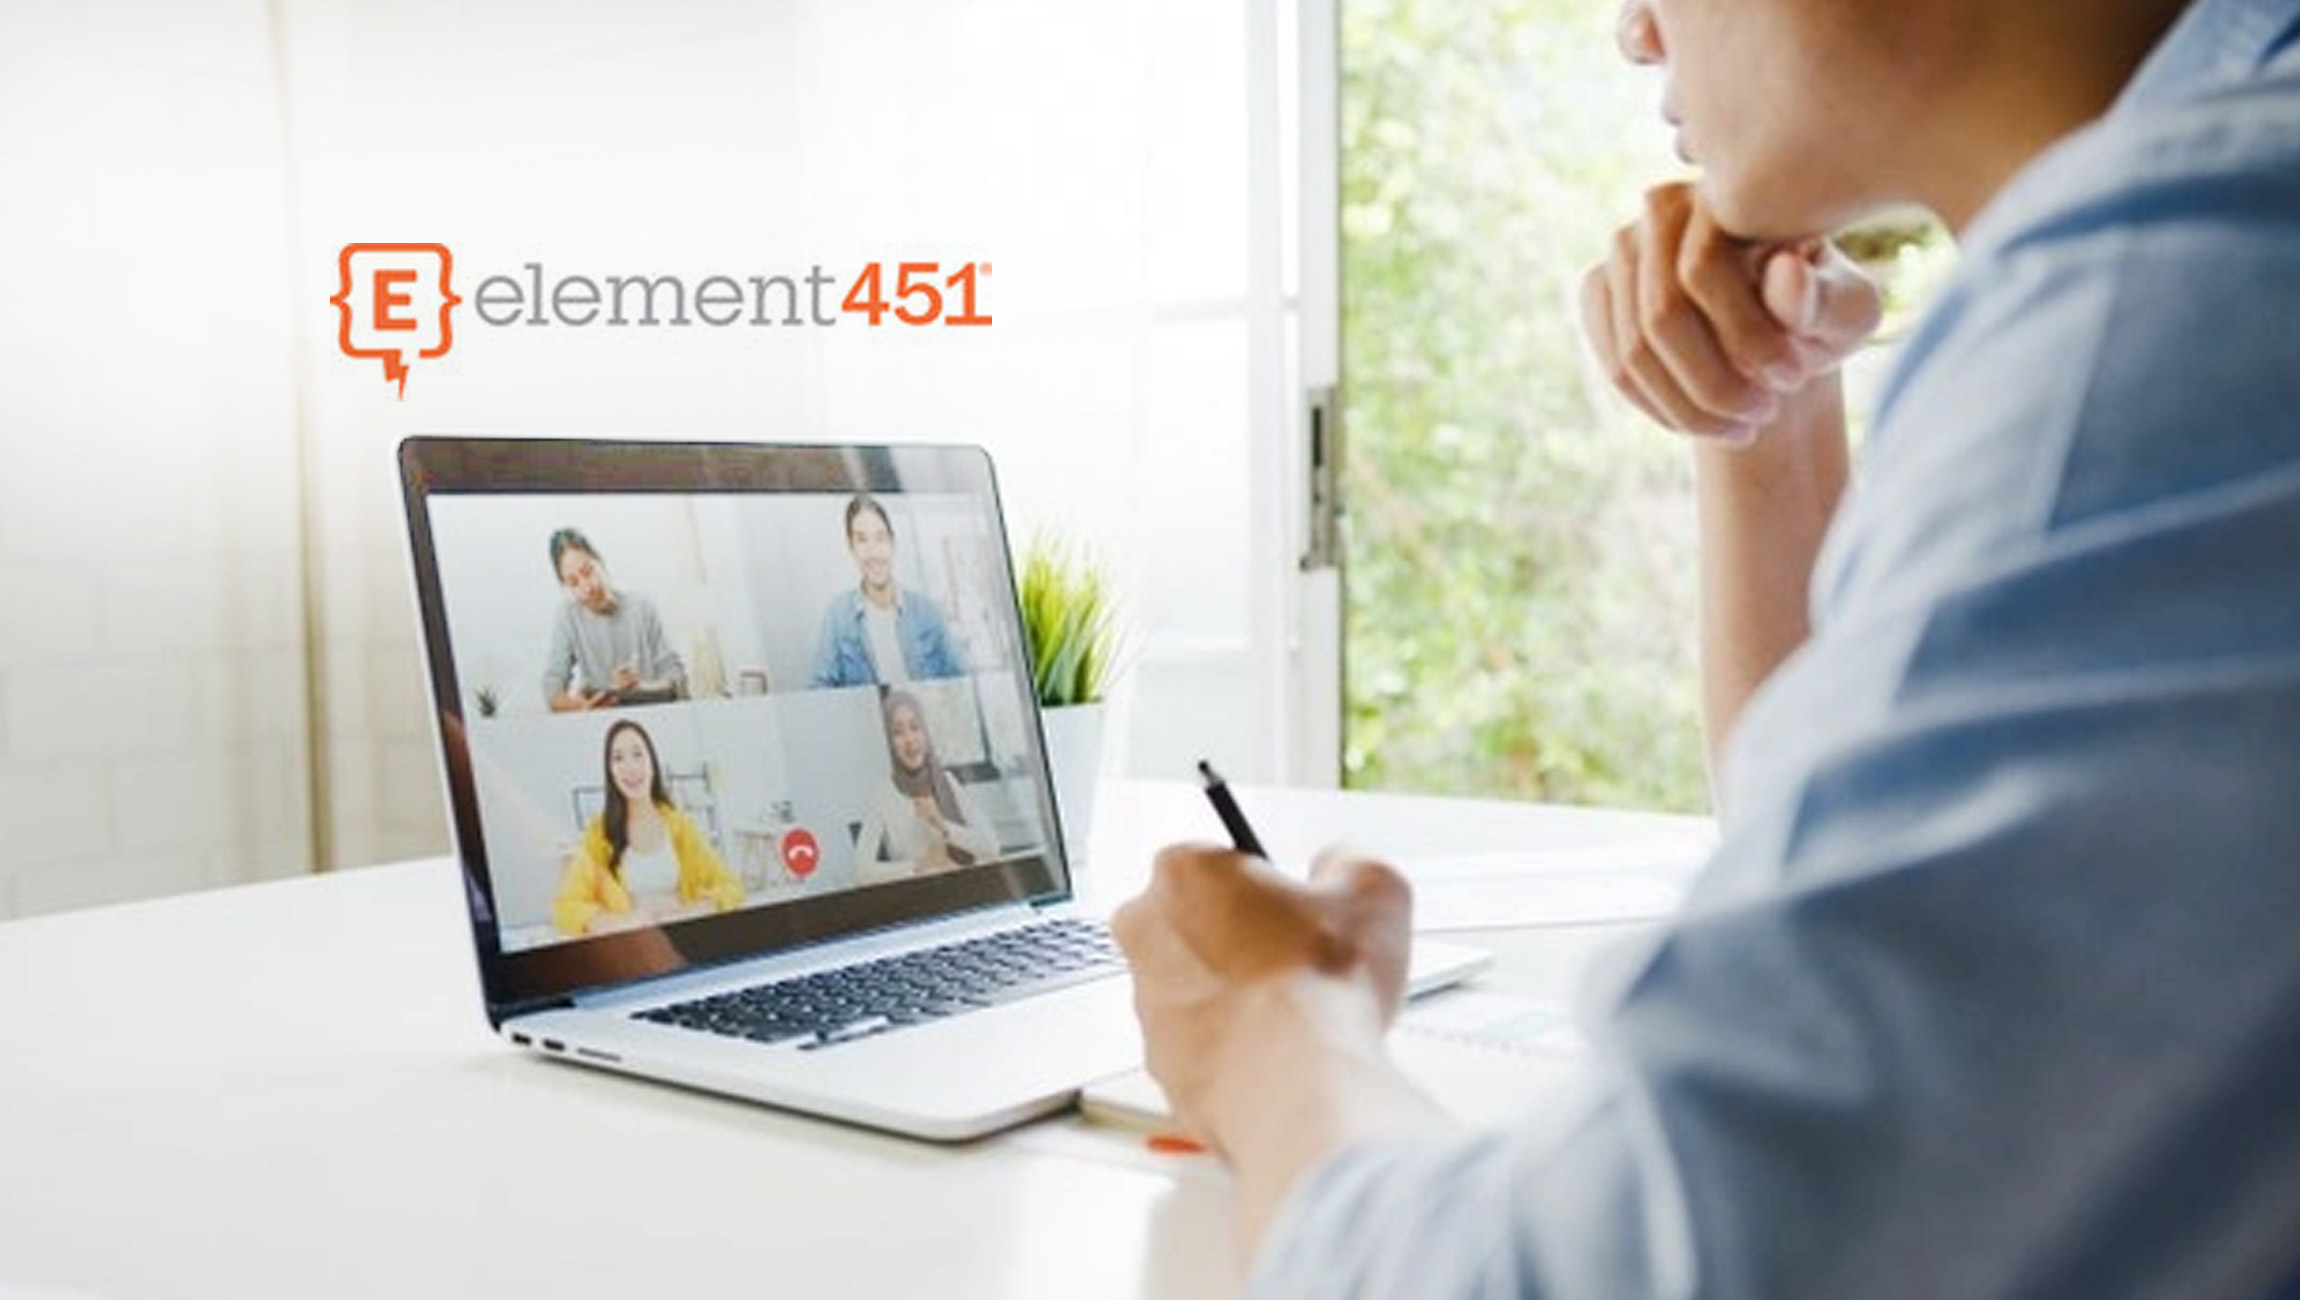 Higher Ed CRM Leader Element451 Announces Conversations Module Enhancements 1